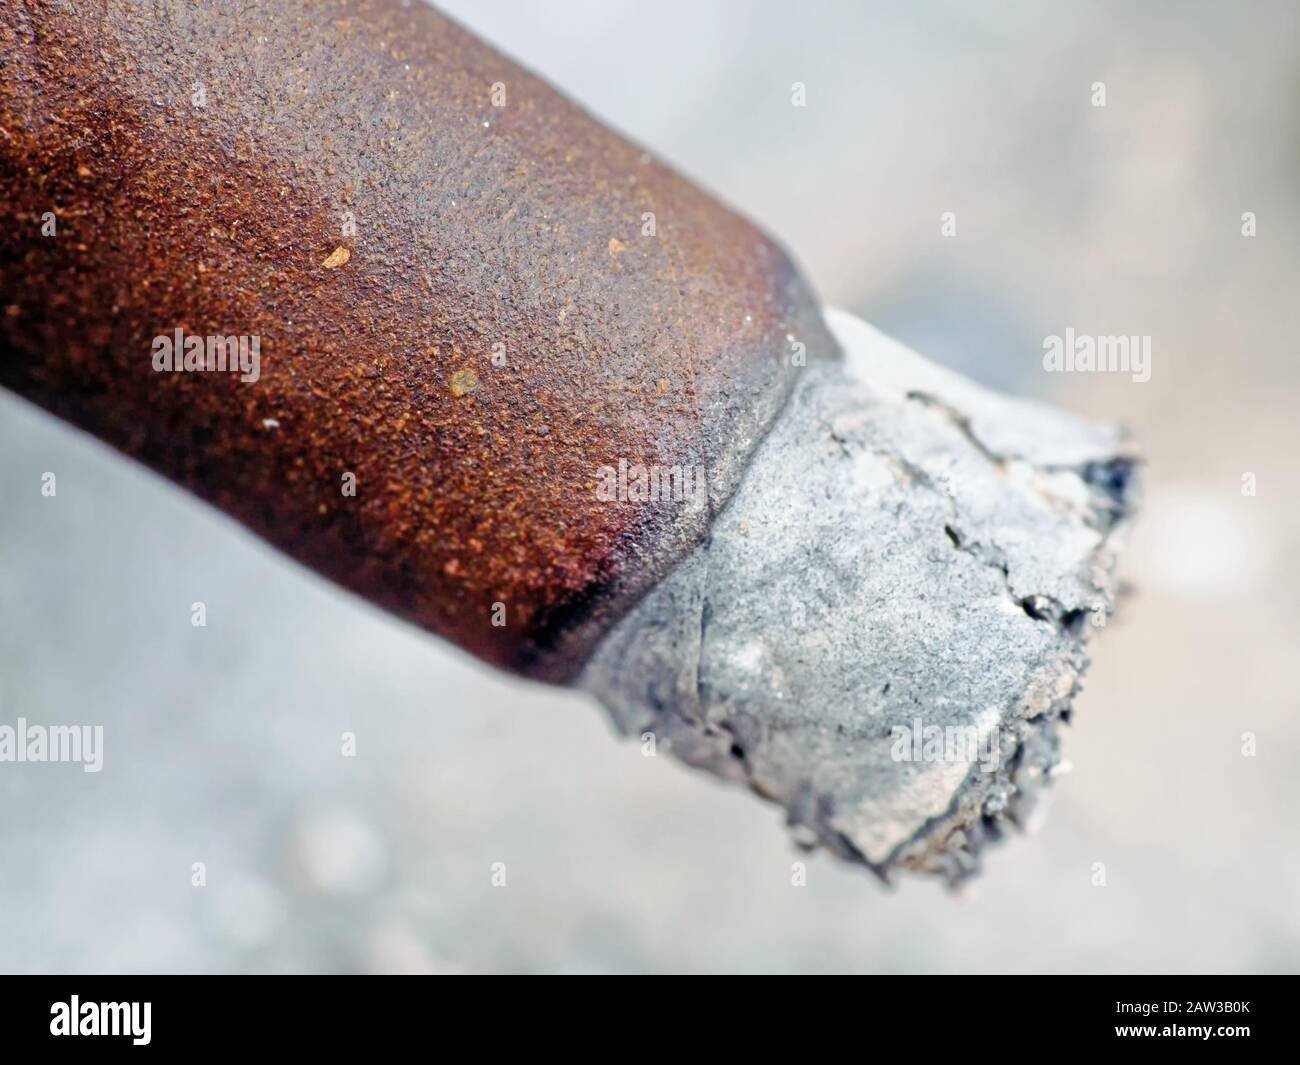 Closeup of cigar with ash. Stock Photo